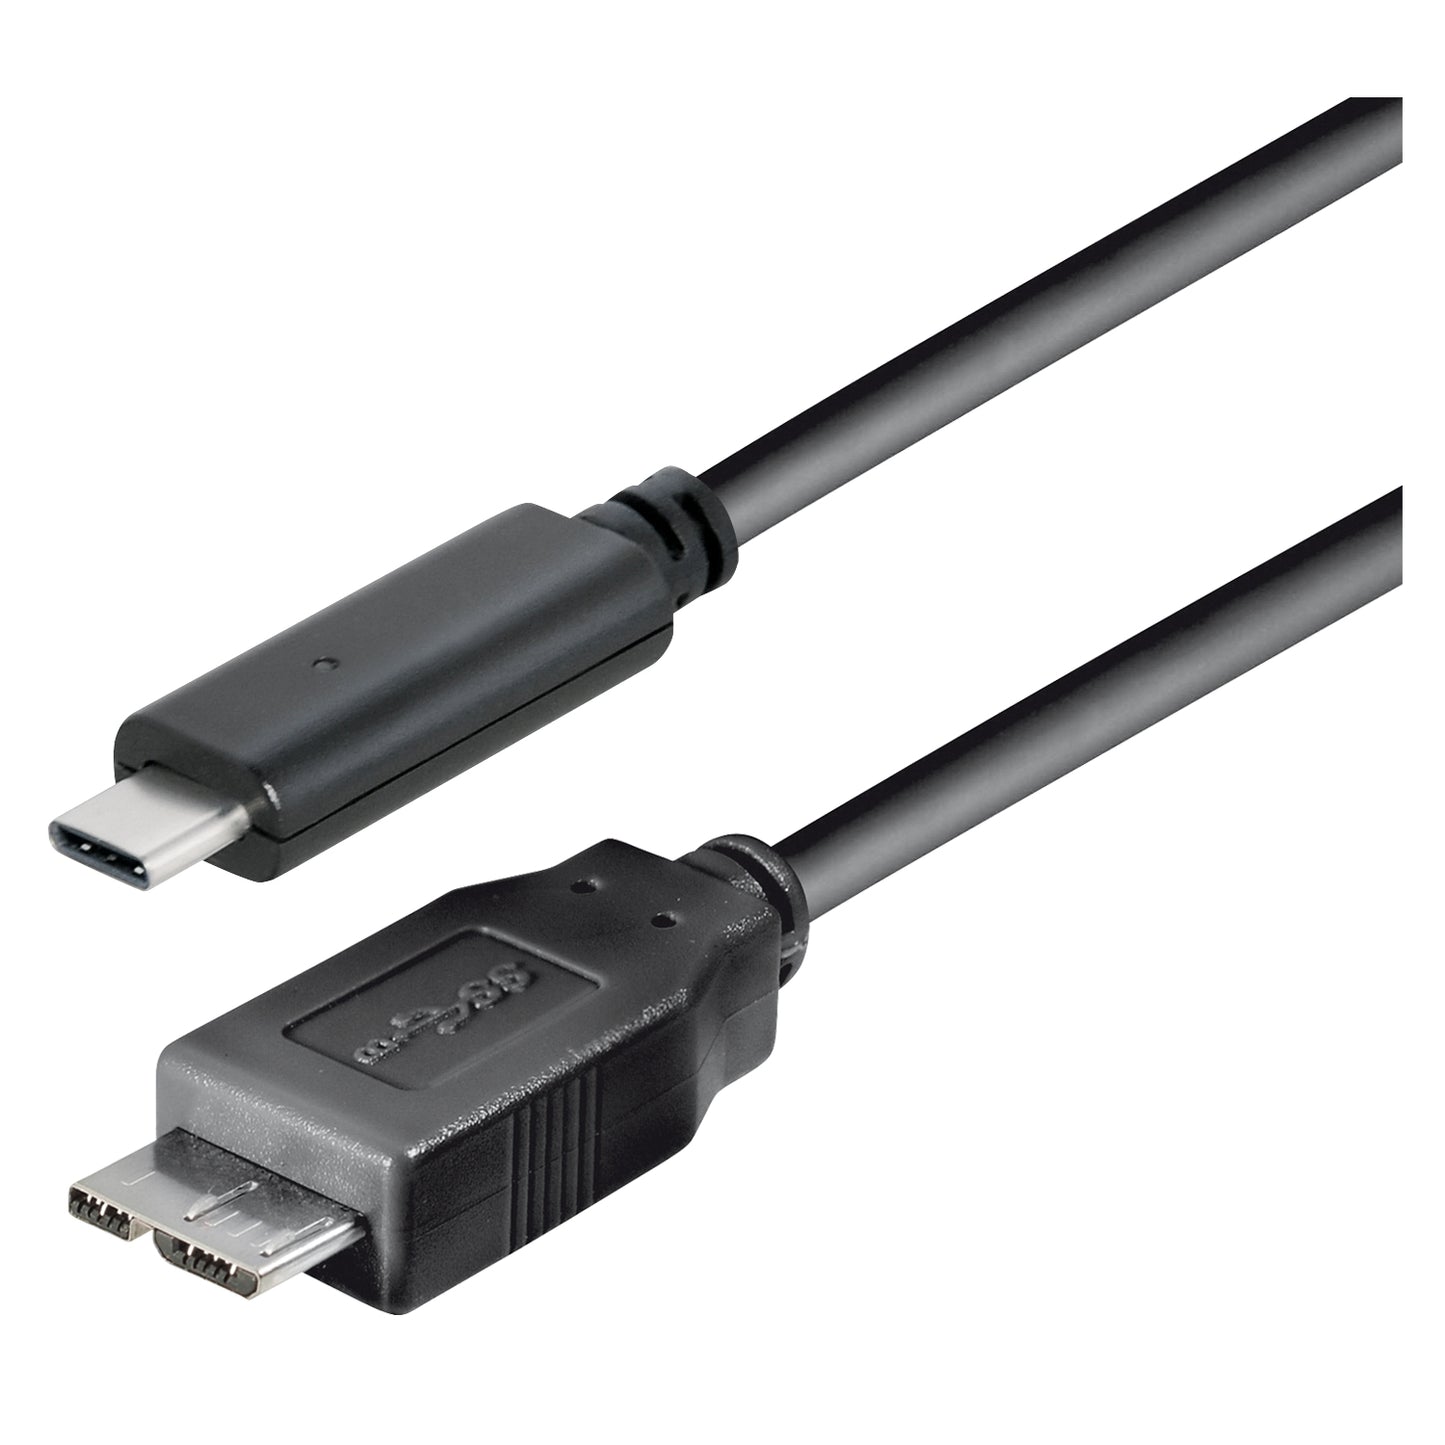 Câble adaptateur USB - prise USB de type C vers prise USB 3.1 micro B, différentes longueurs